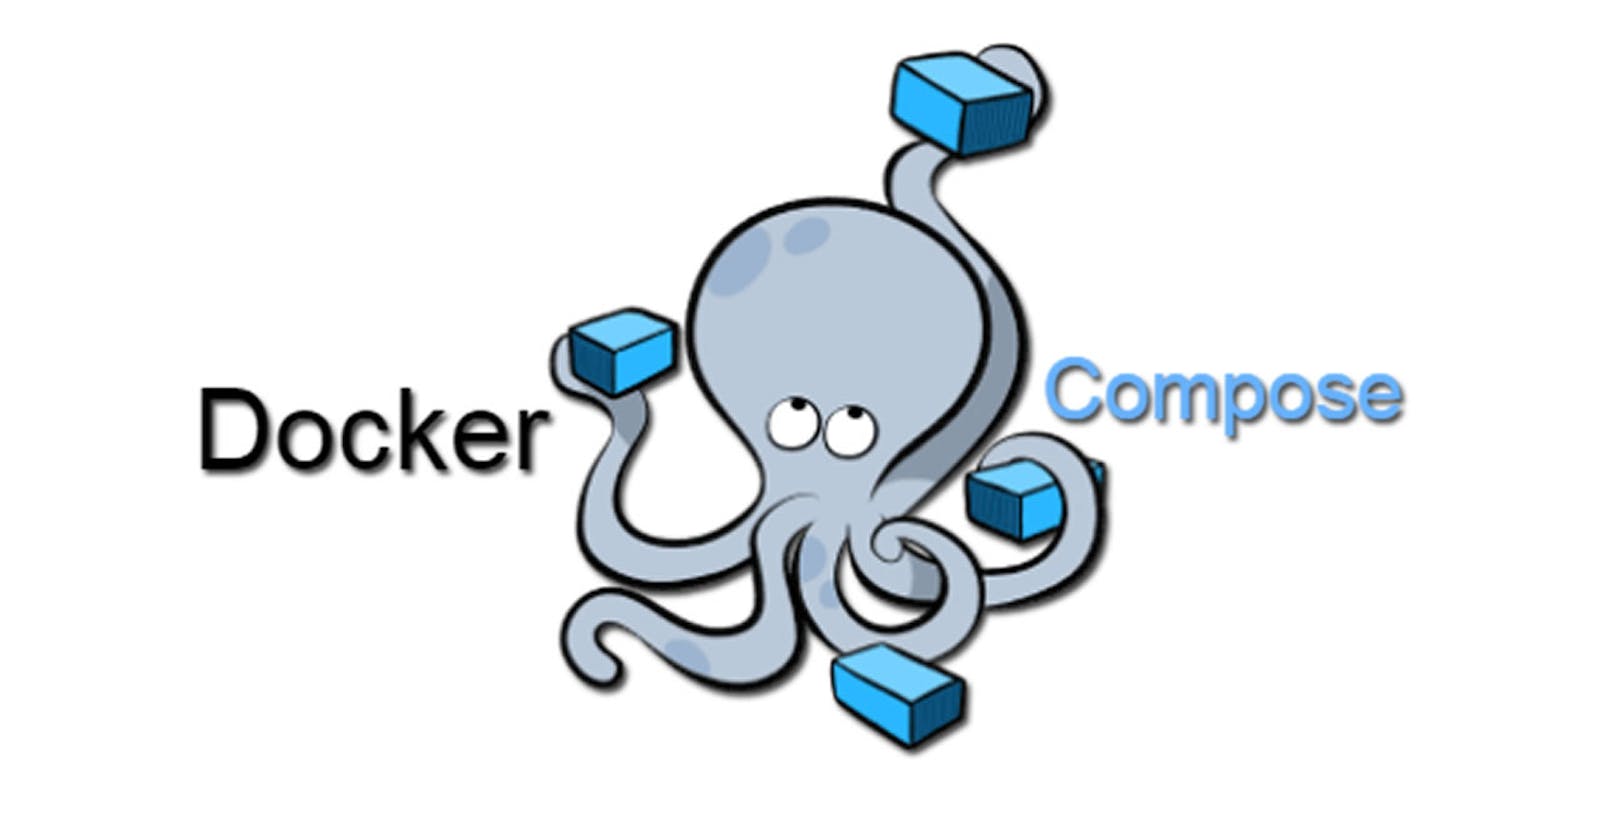 Docker Compose for DevOps Engineers